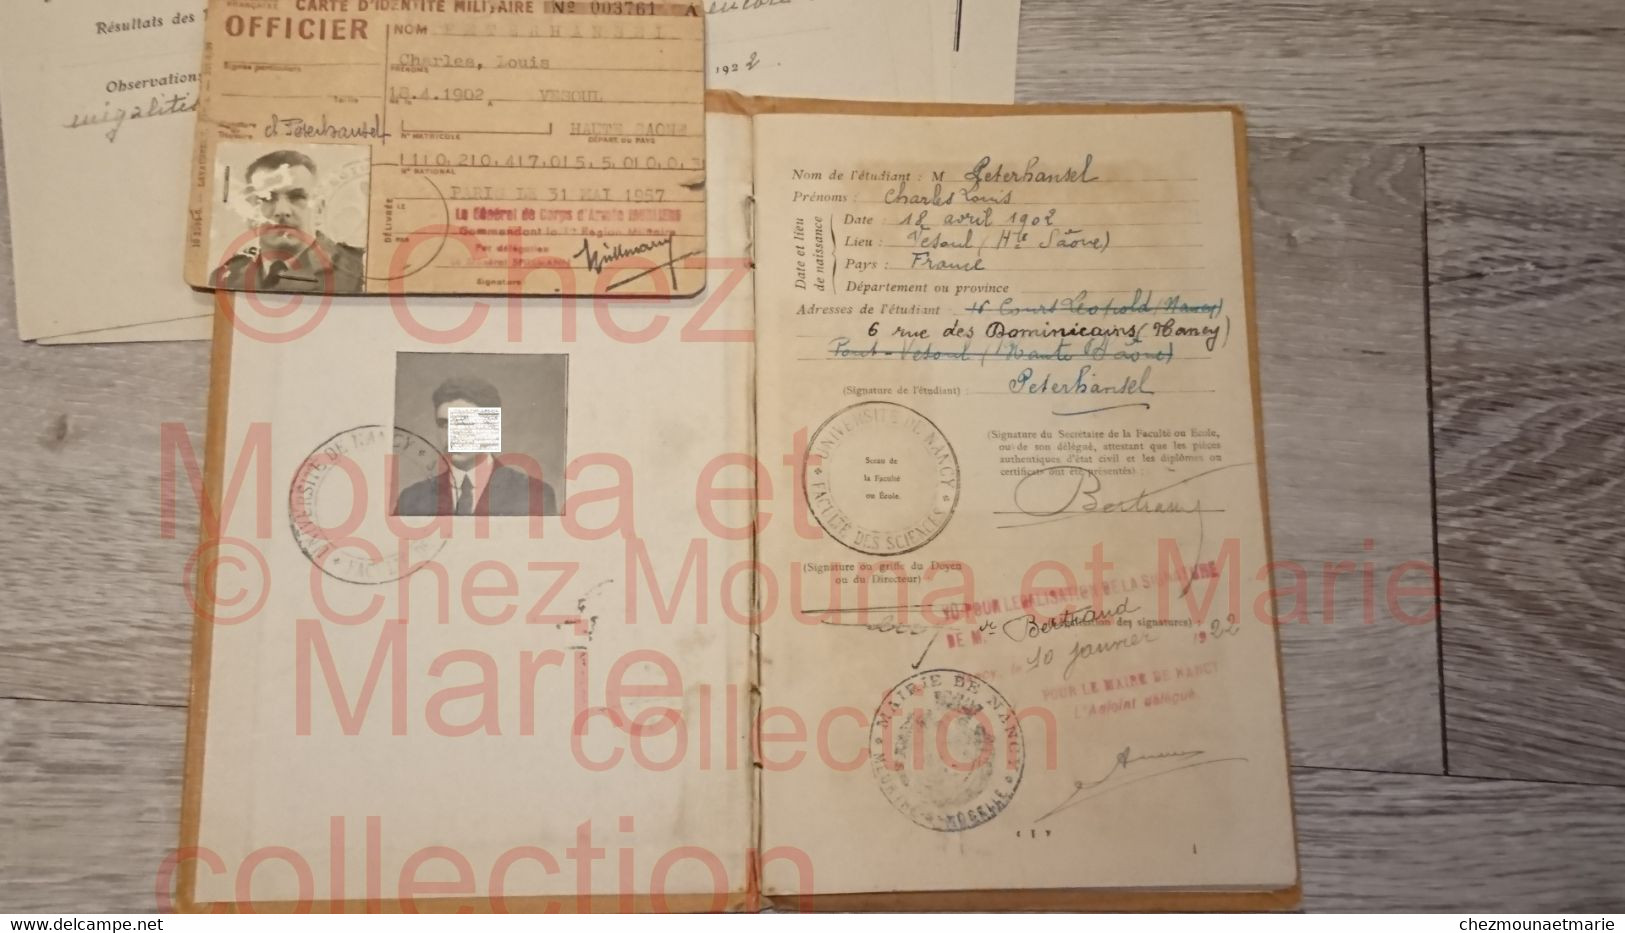 PETERHANSEL NE A VESOUL CARTE IDENTITE MILITAIRE OFFICIER LIVRET UNIVERSITAIRE NANCY - Documenti